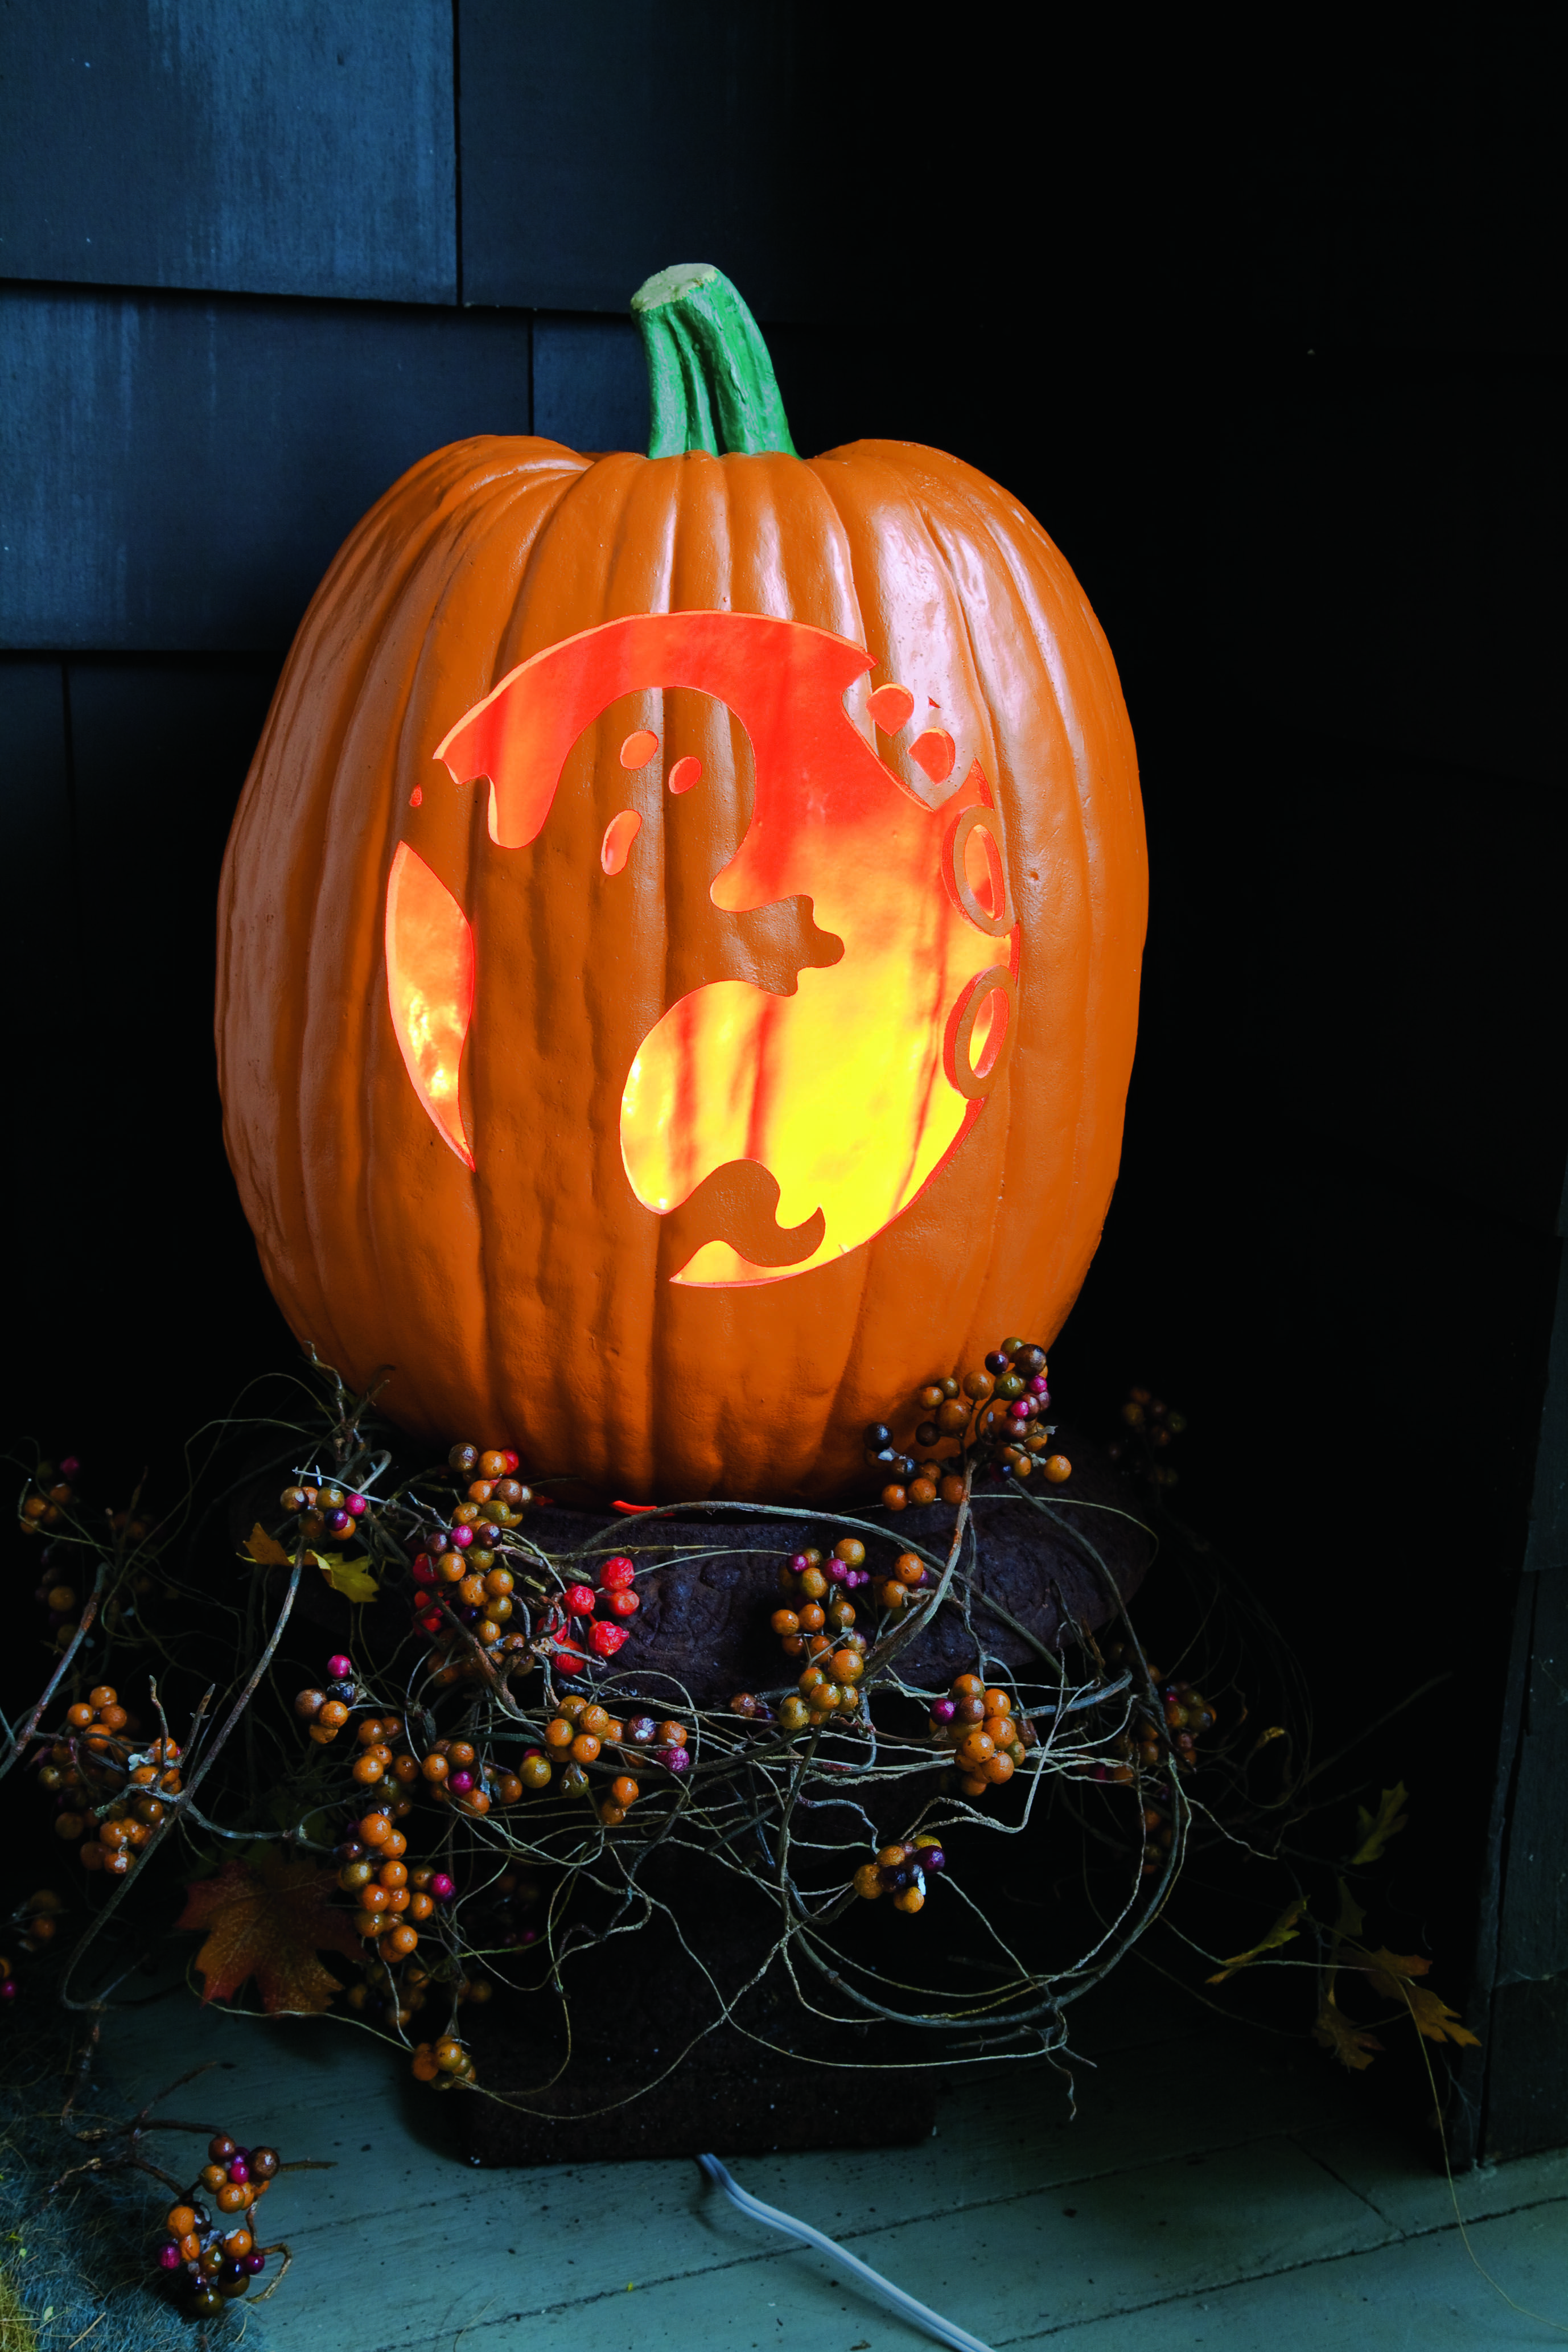 5 in 1 Pumpkin/Jack O Lantern 12 X 12 STENCIL Fall/Halloween/Leaves/Happy/Spooky 